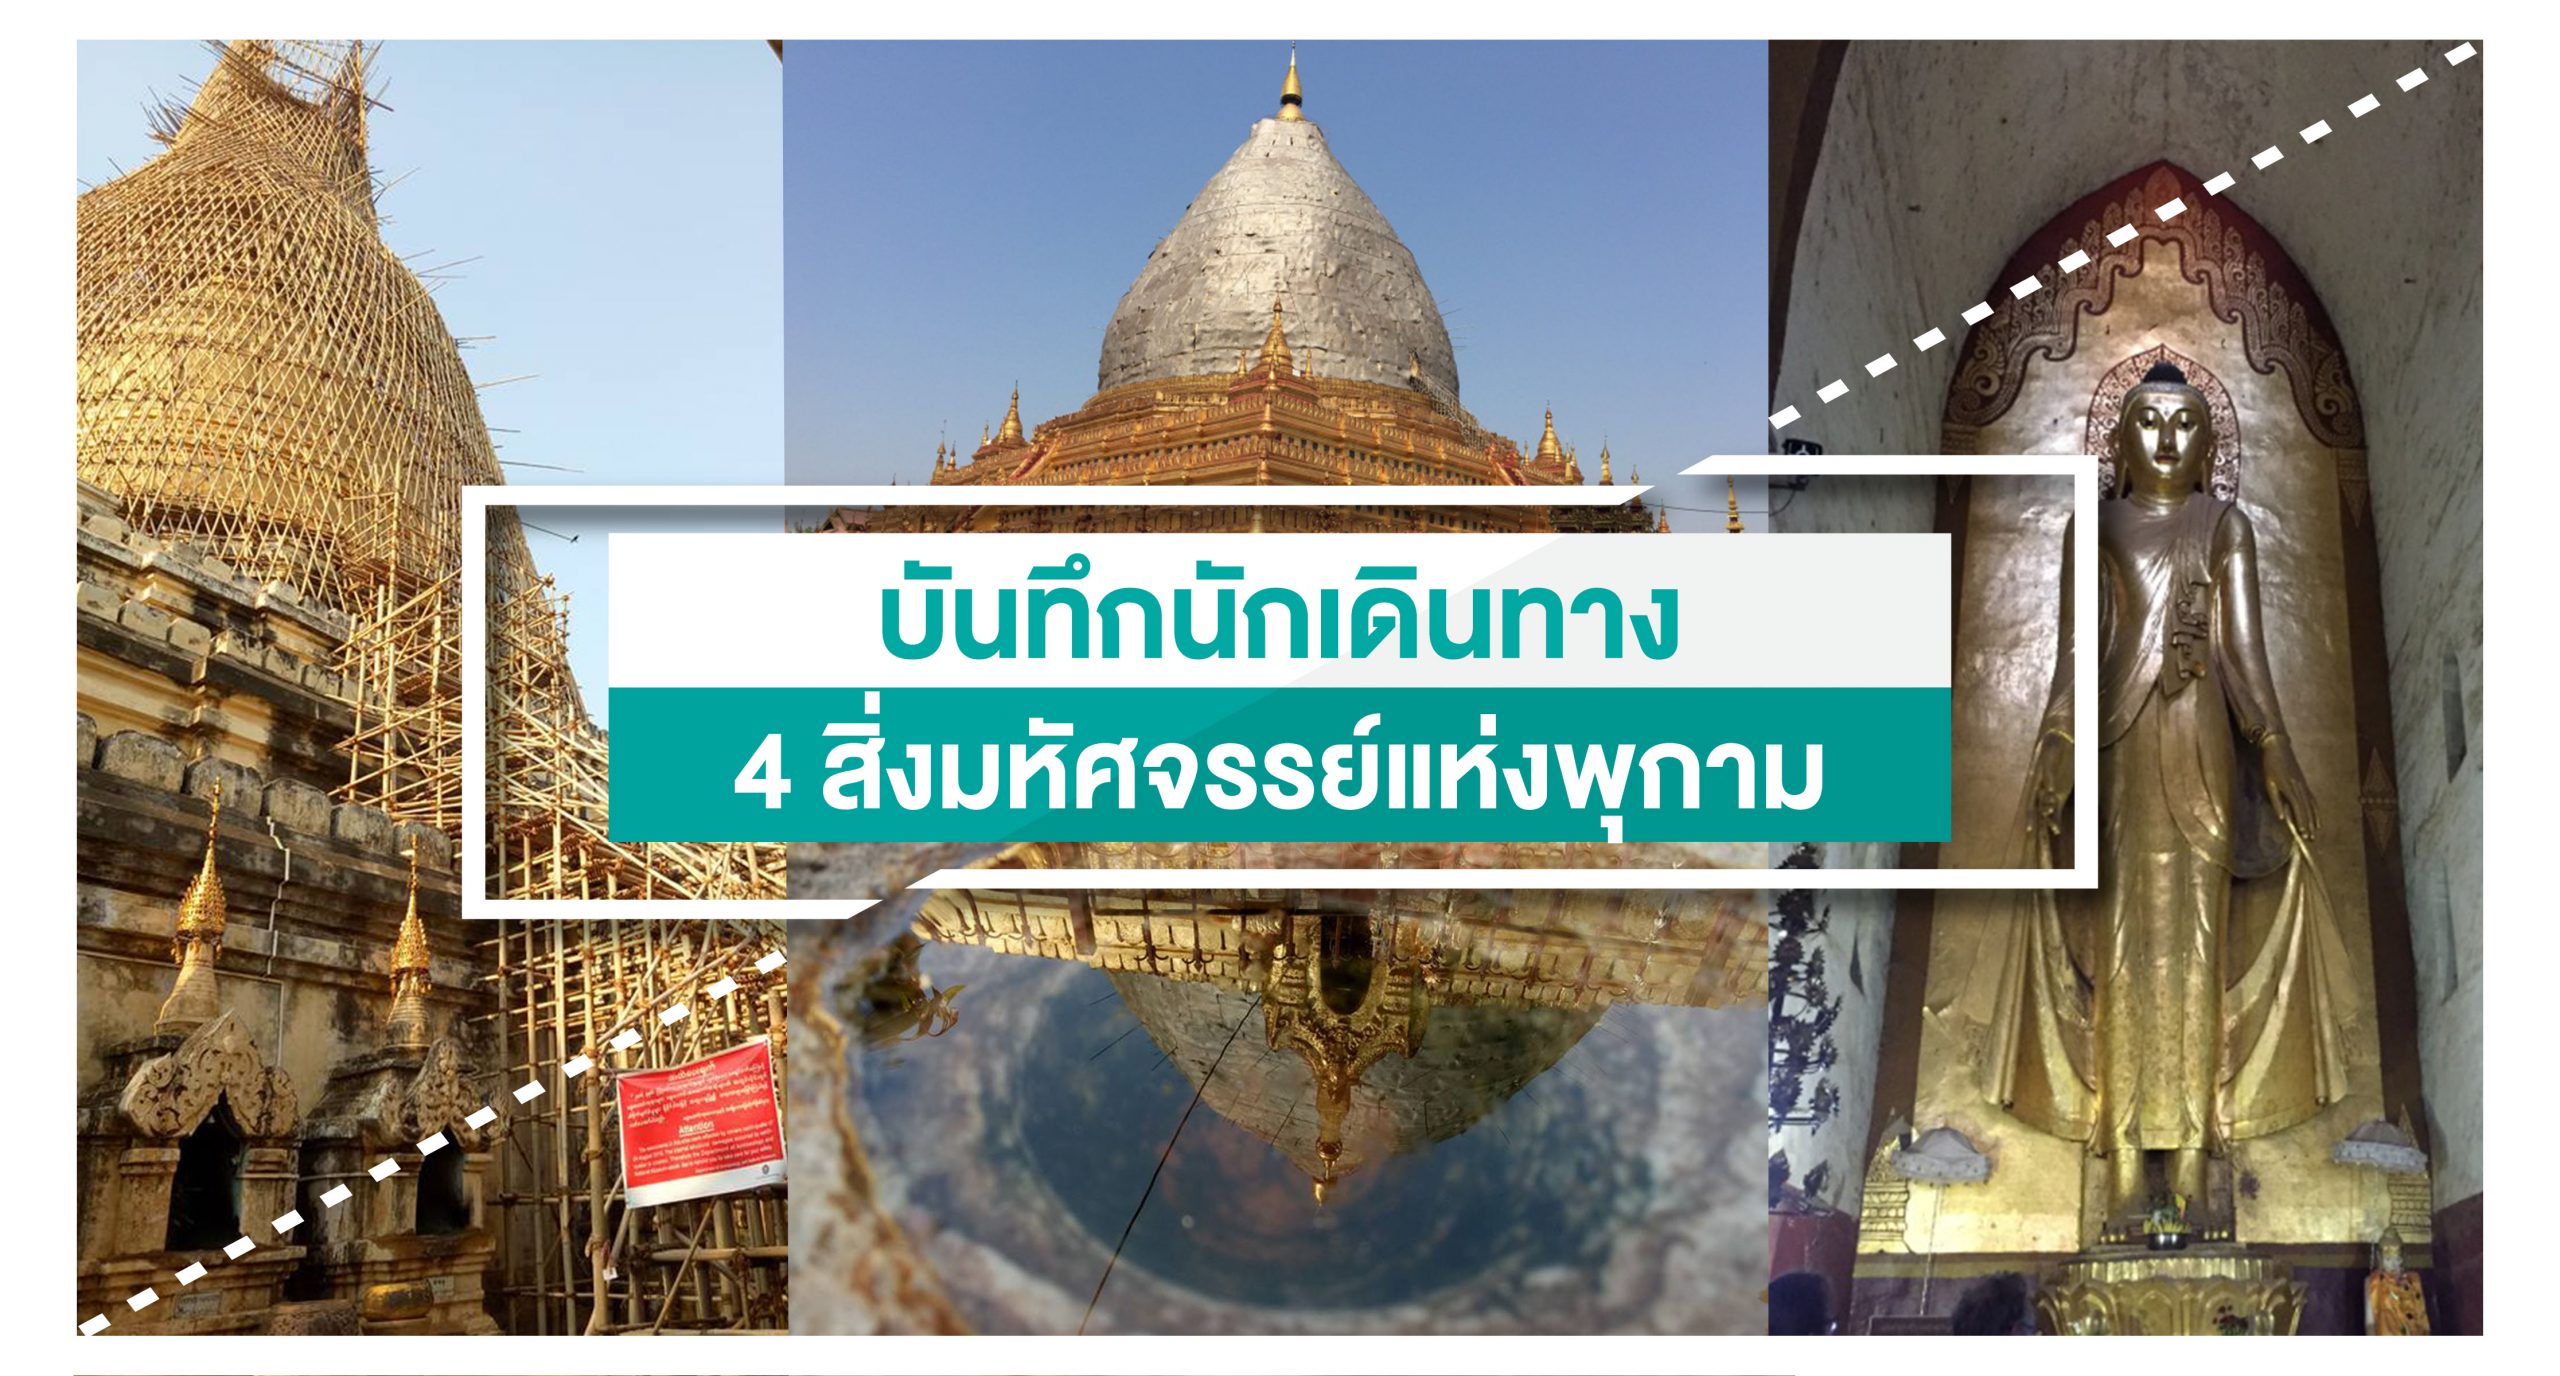 4 สิ่งมหัศจรรย์แห่งพุกาม (4 wonders of Bagan, Myanmar)